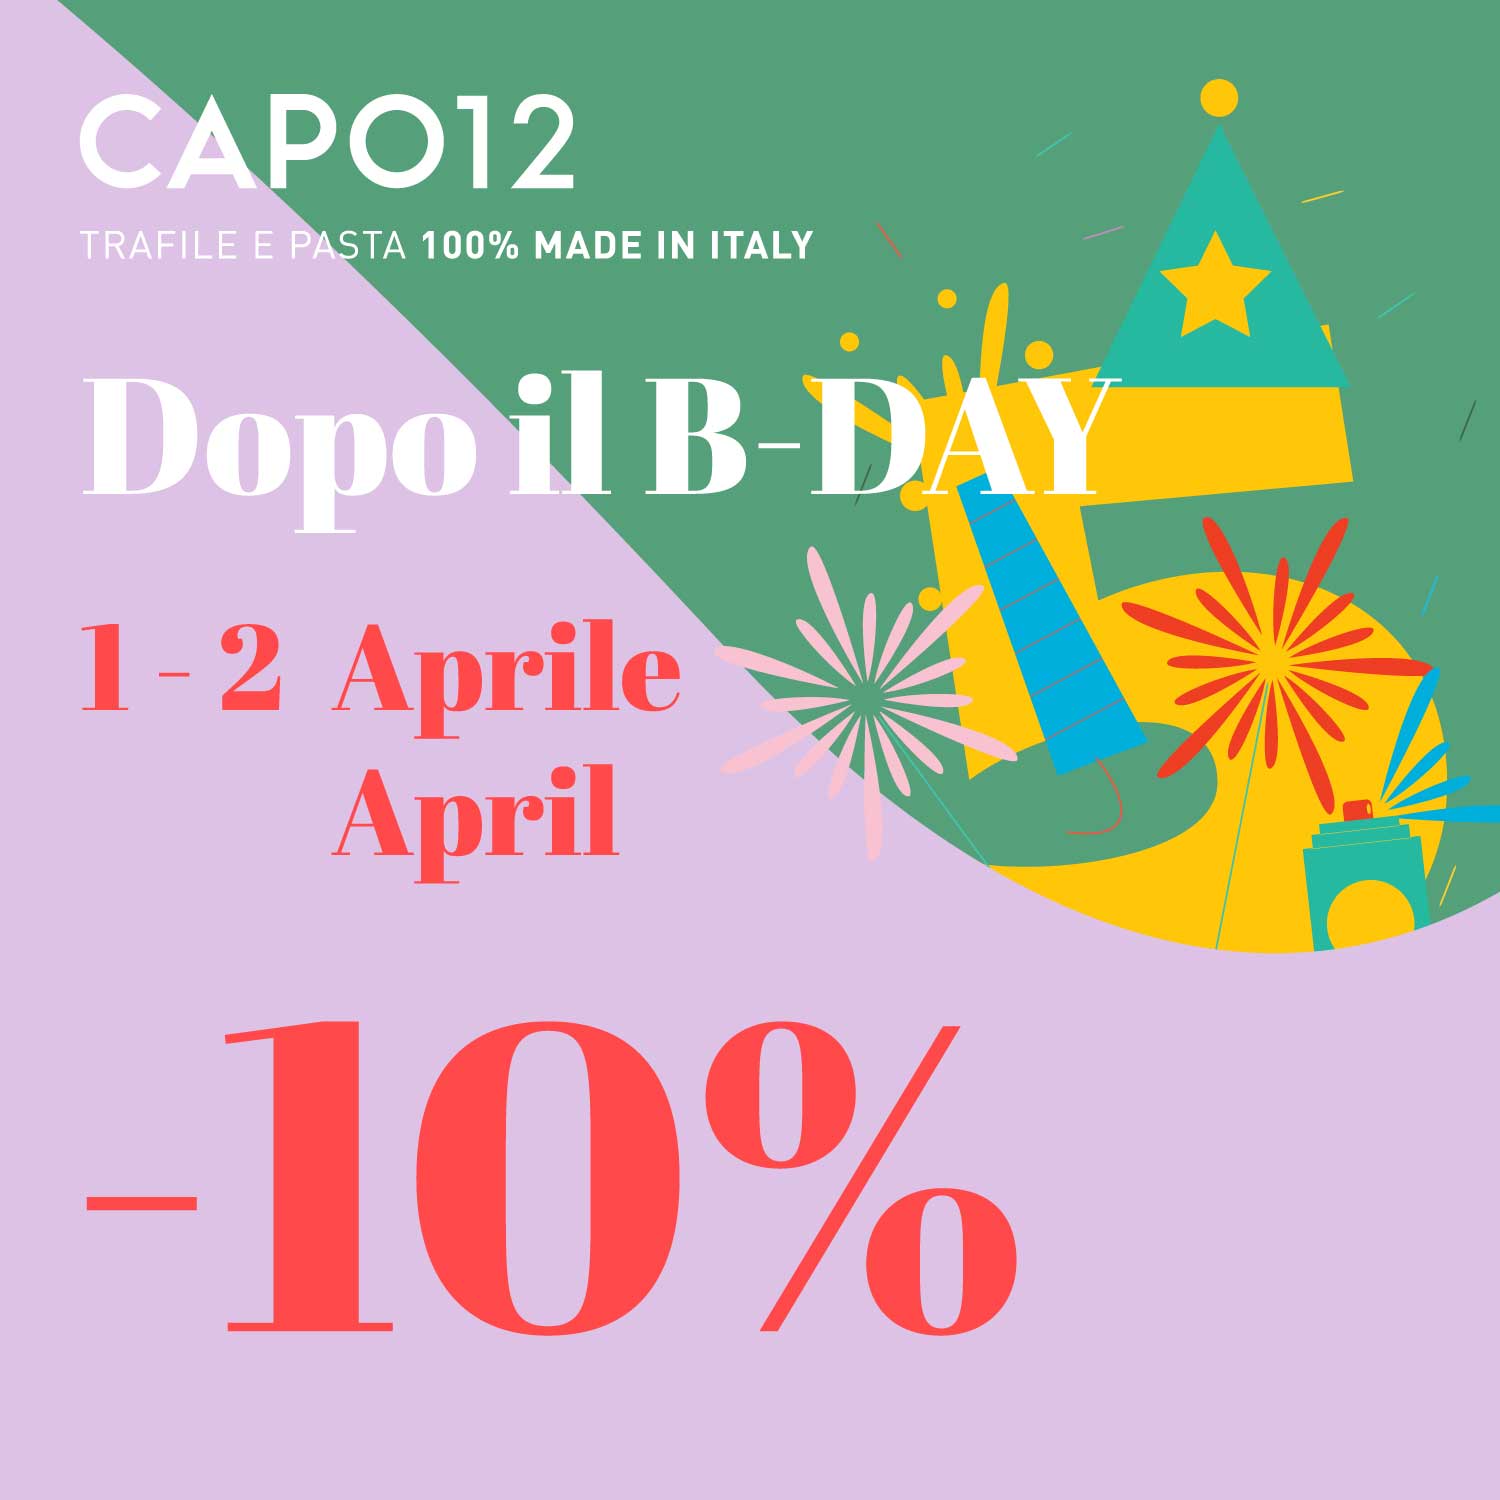 Offerte Speciali da CAPO12 - Trafile e Pasta 100% MADE IN ITALY